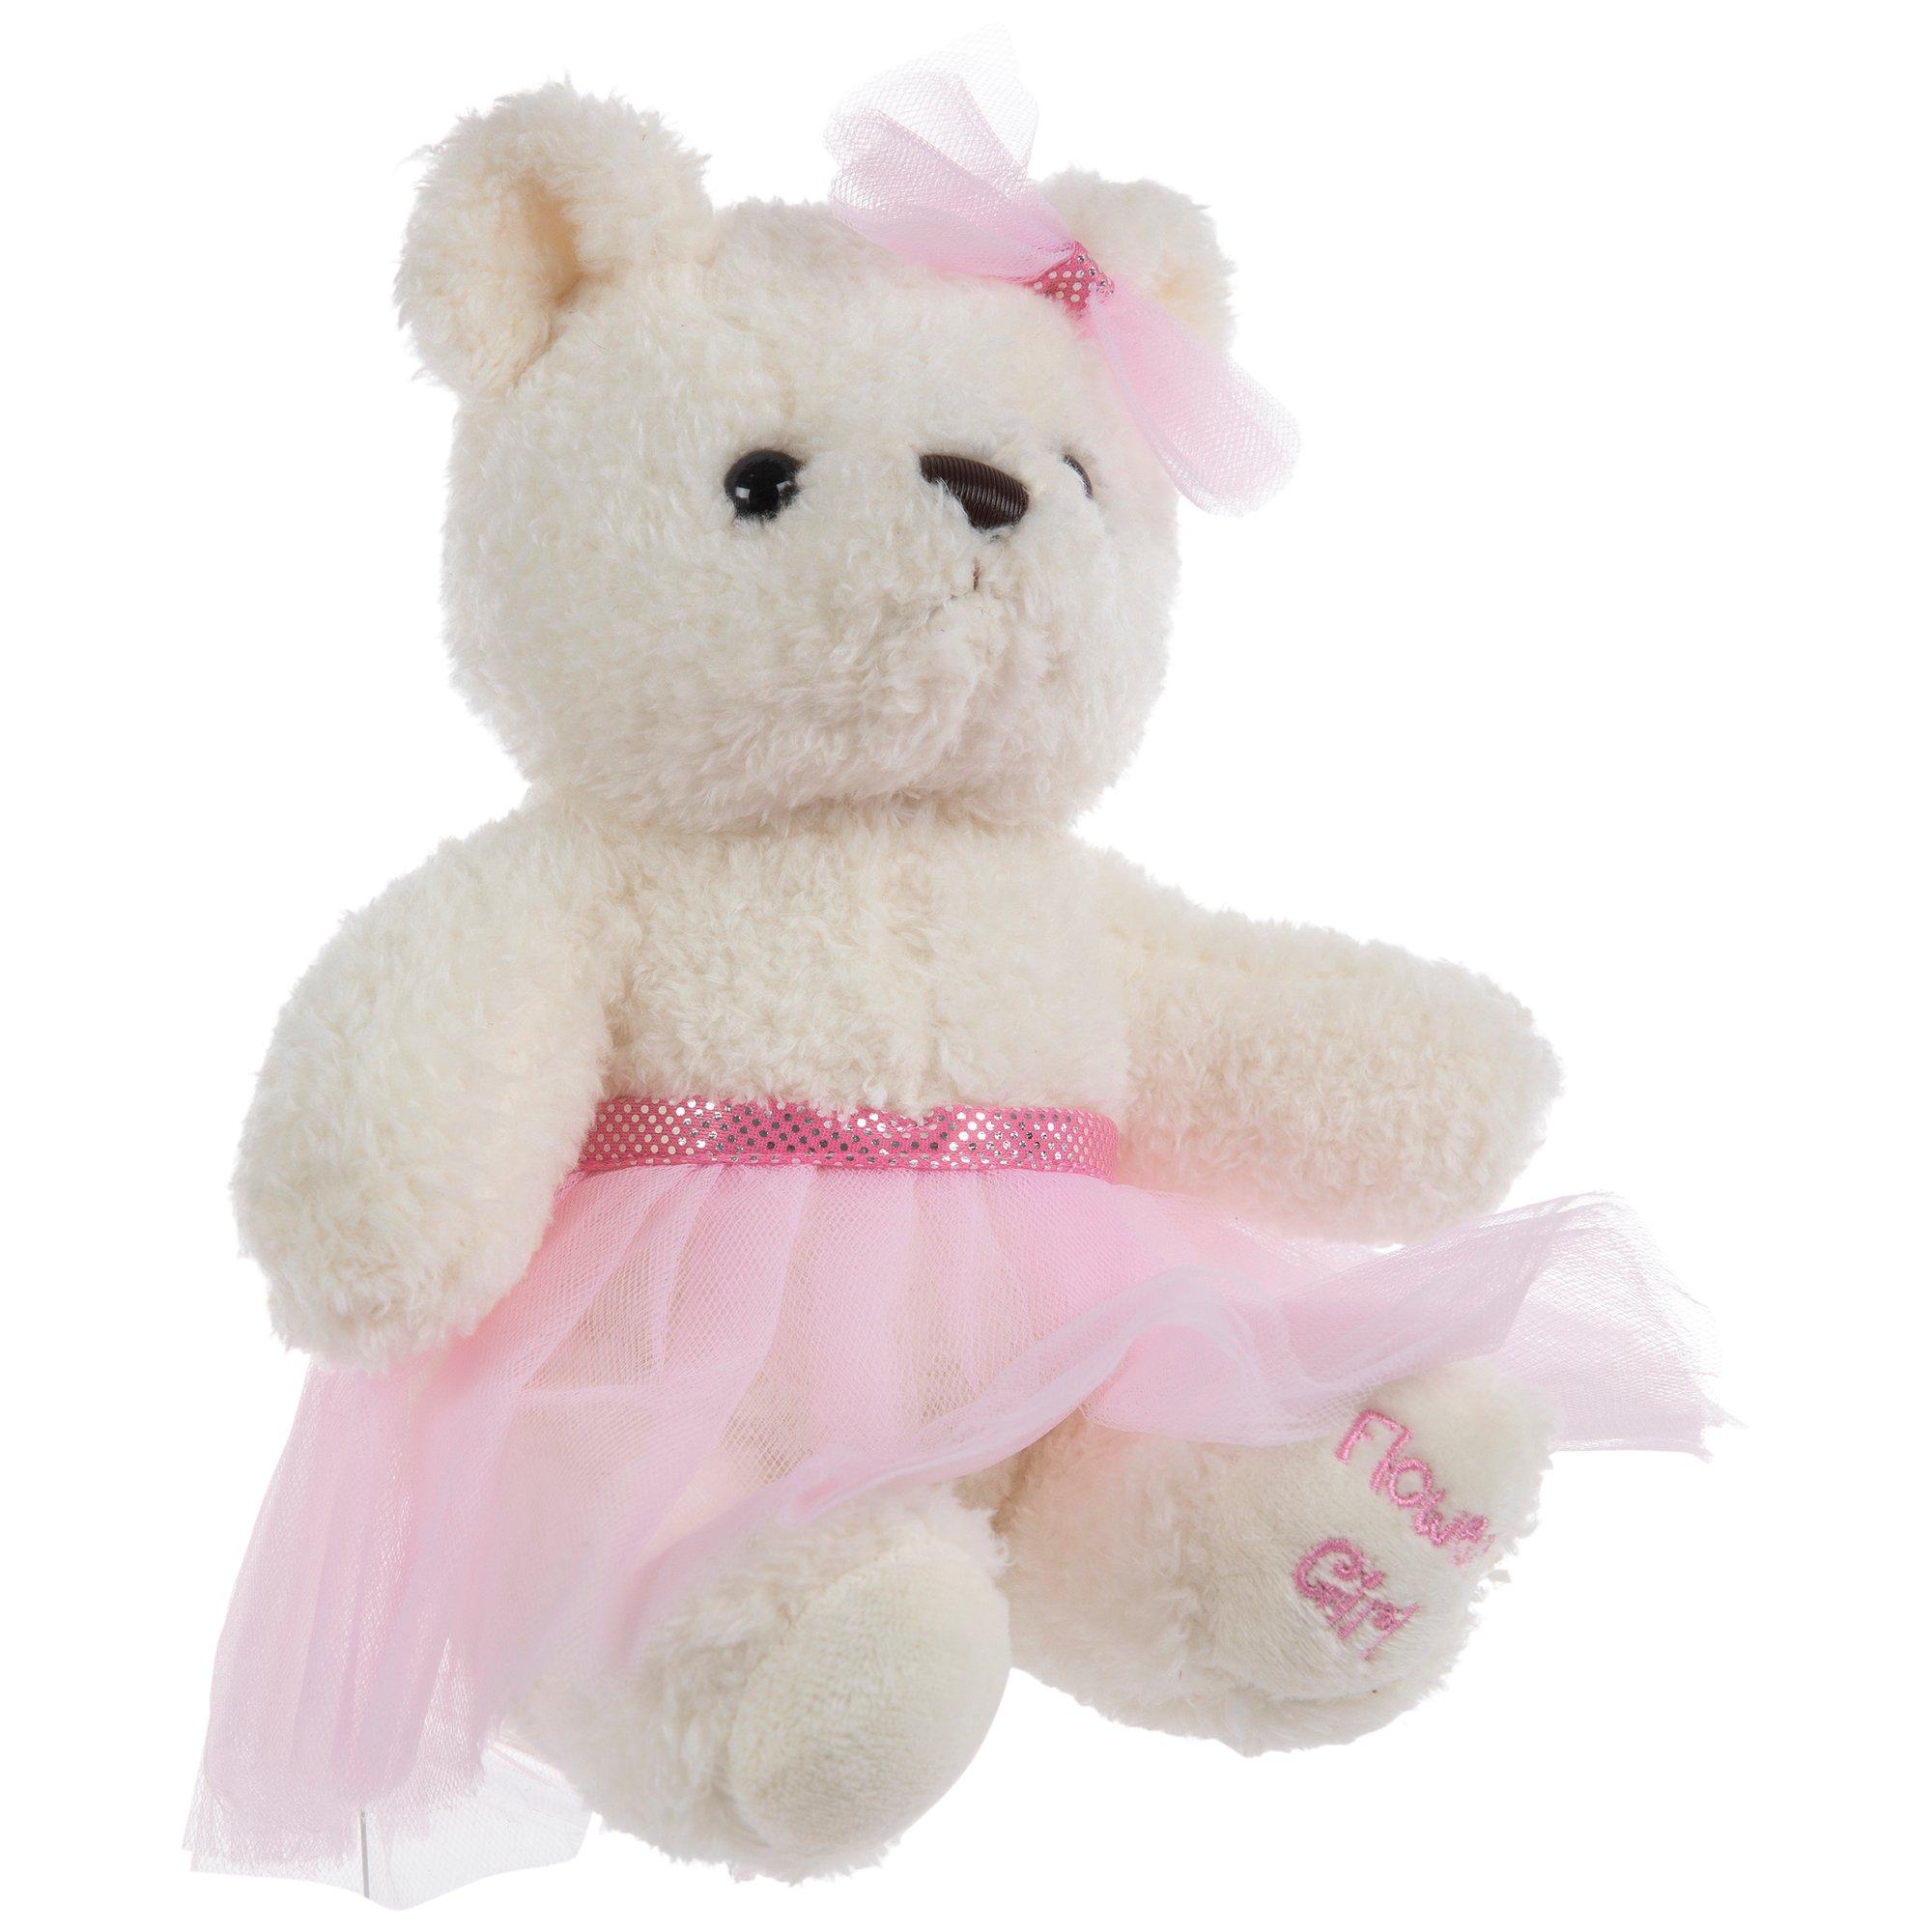 Flower Girl Plush Bear, Hobby Lobby